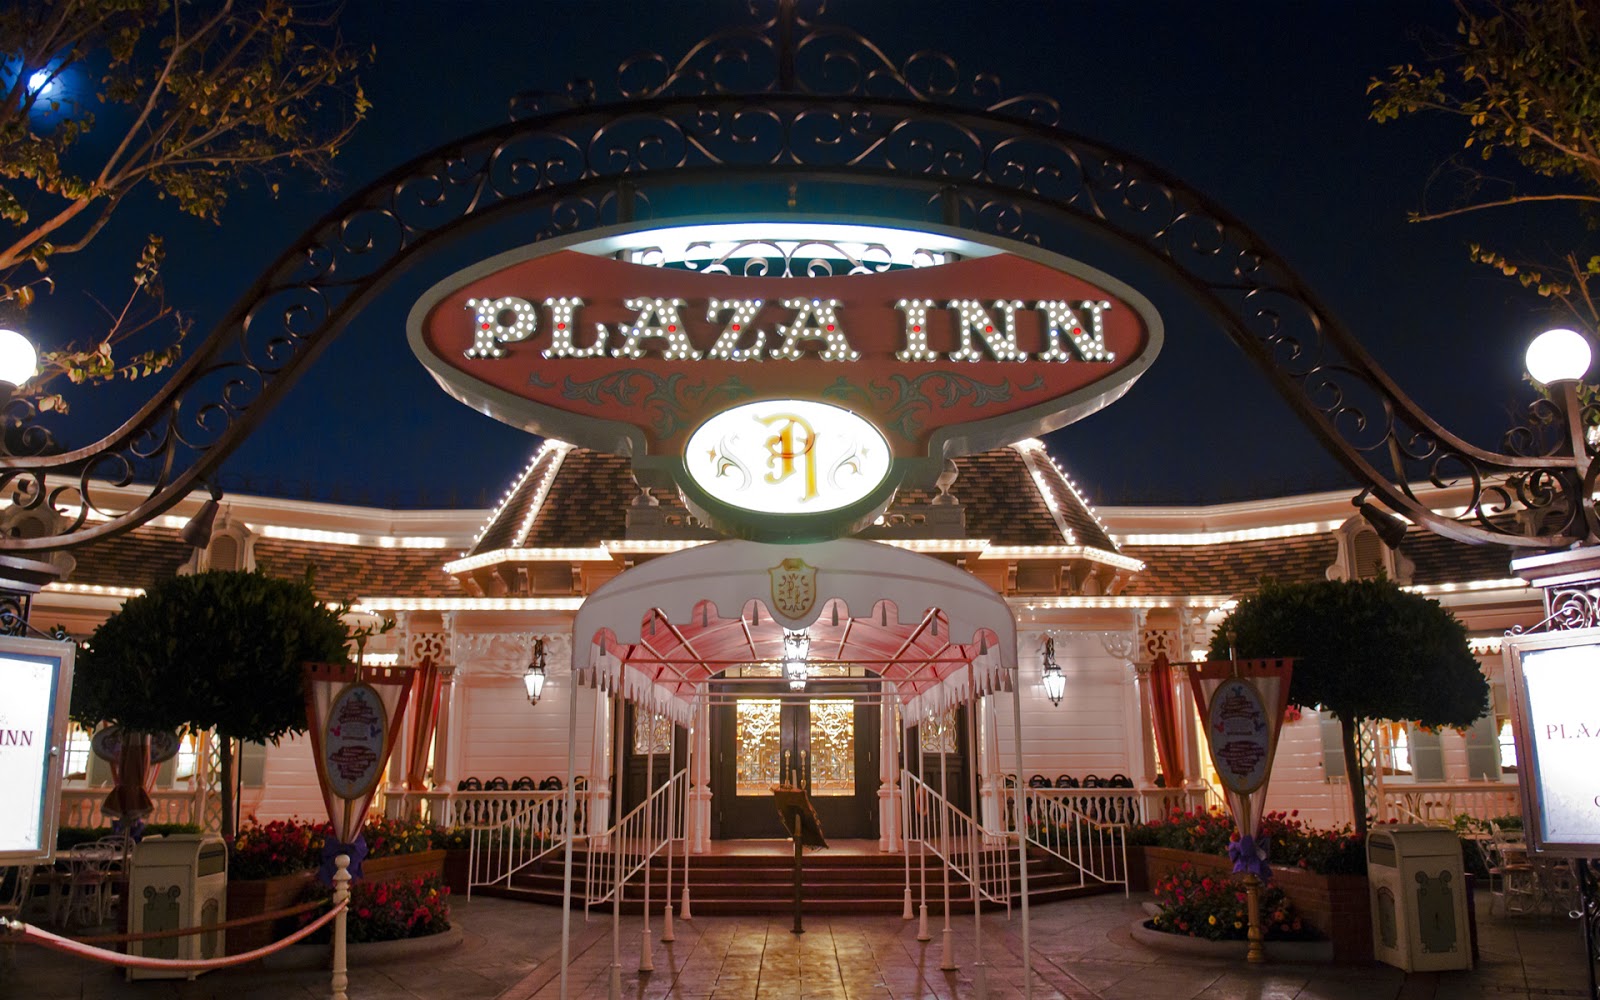 The Plaza Inn